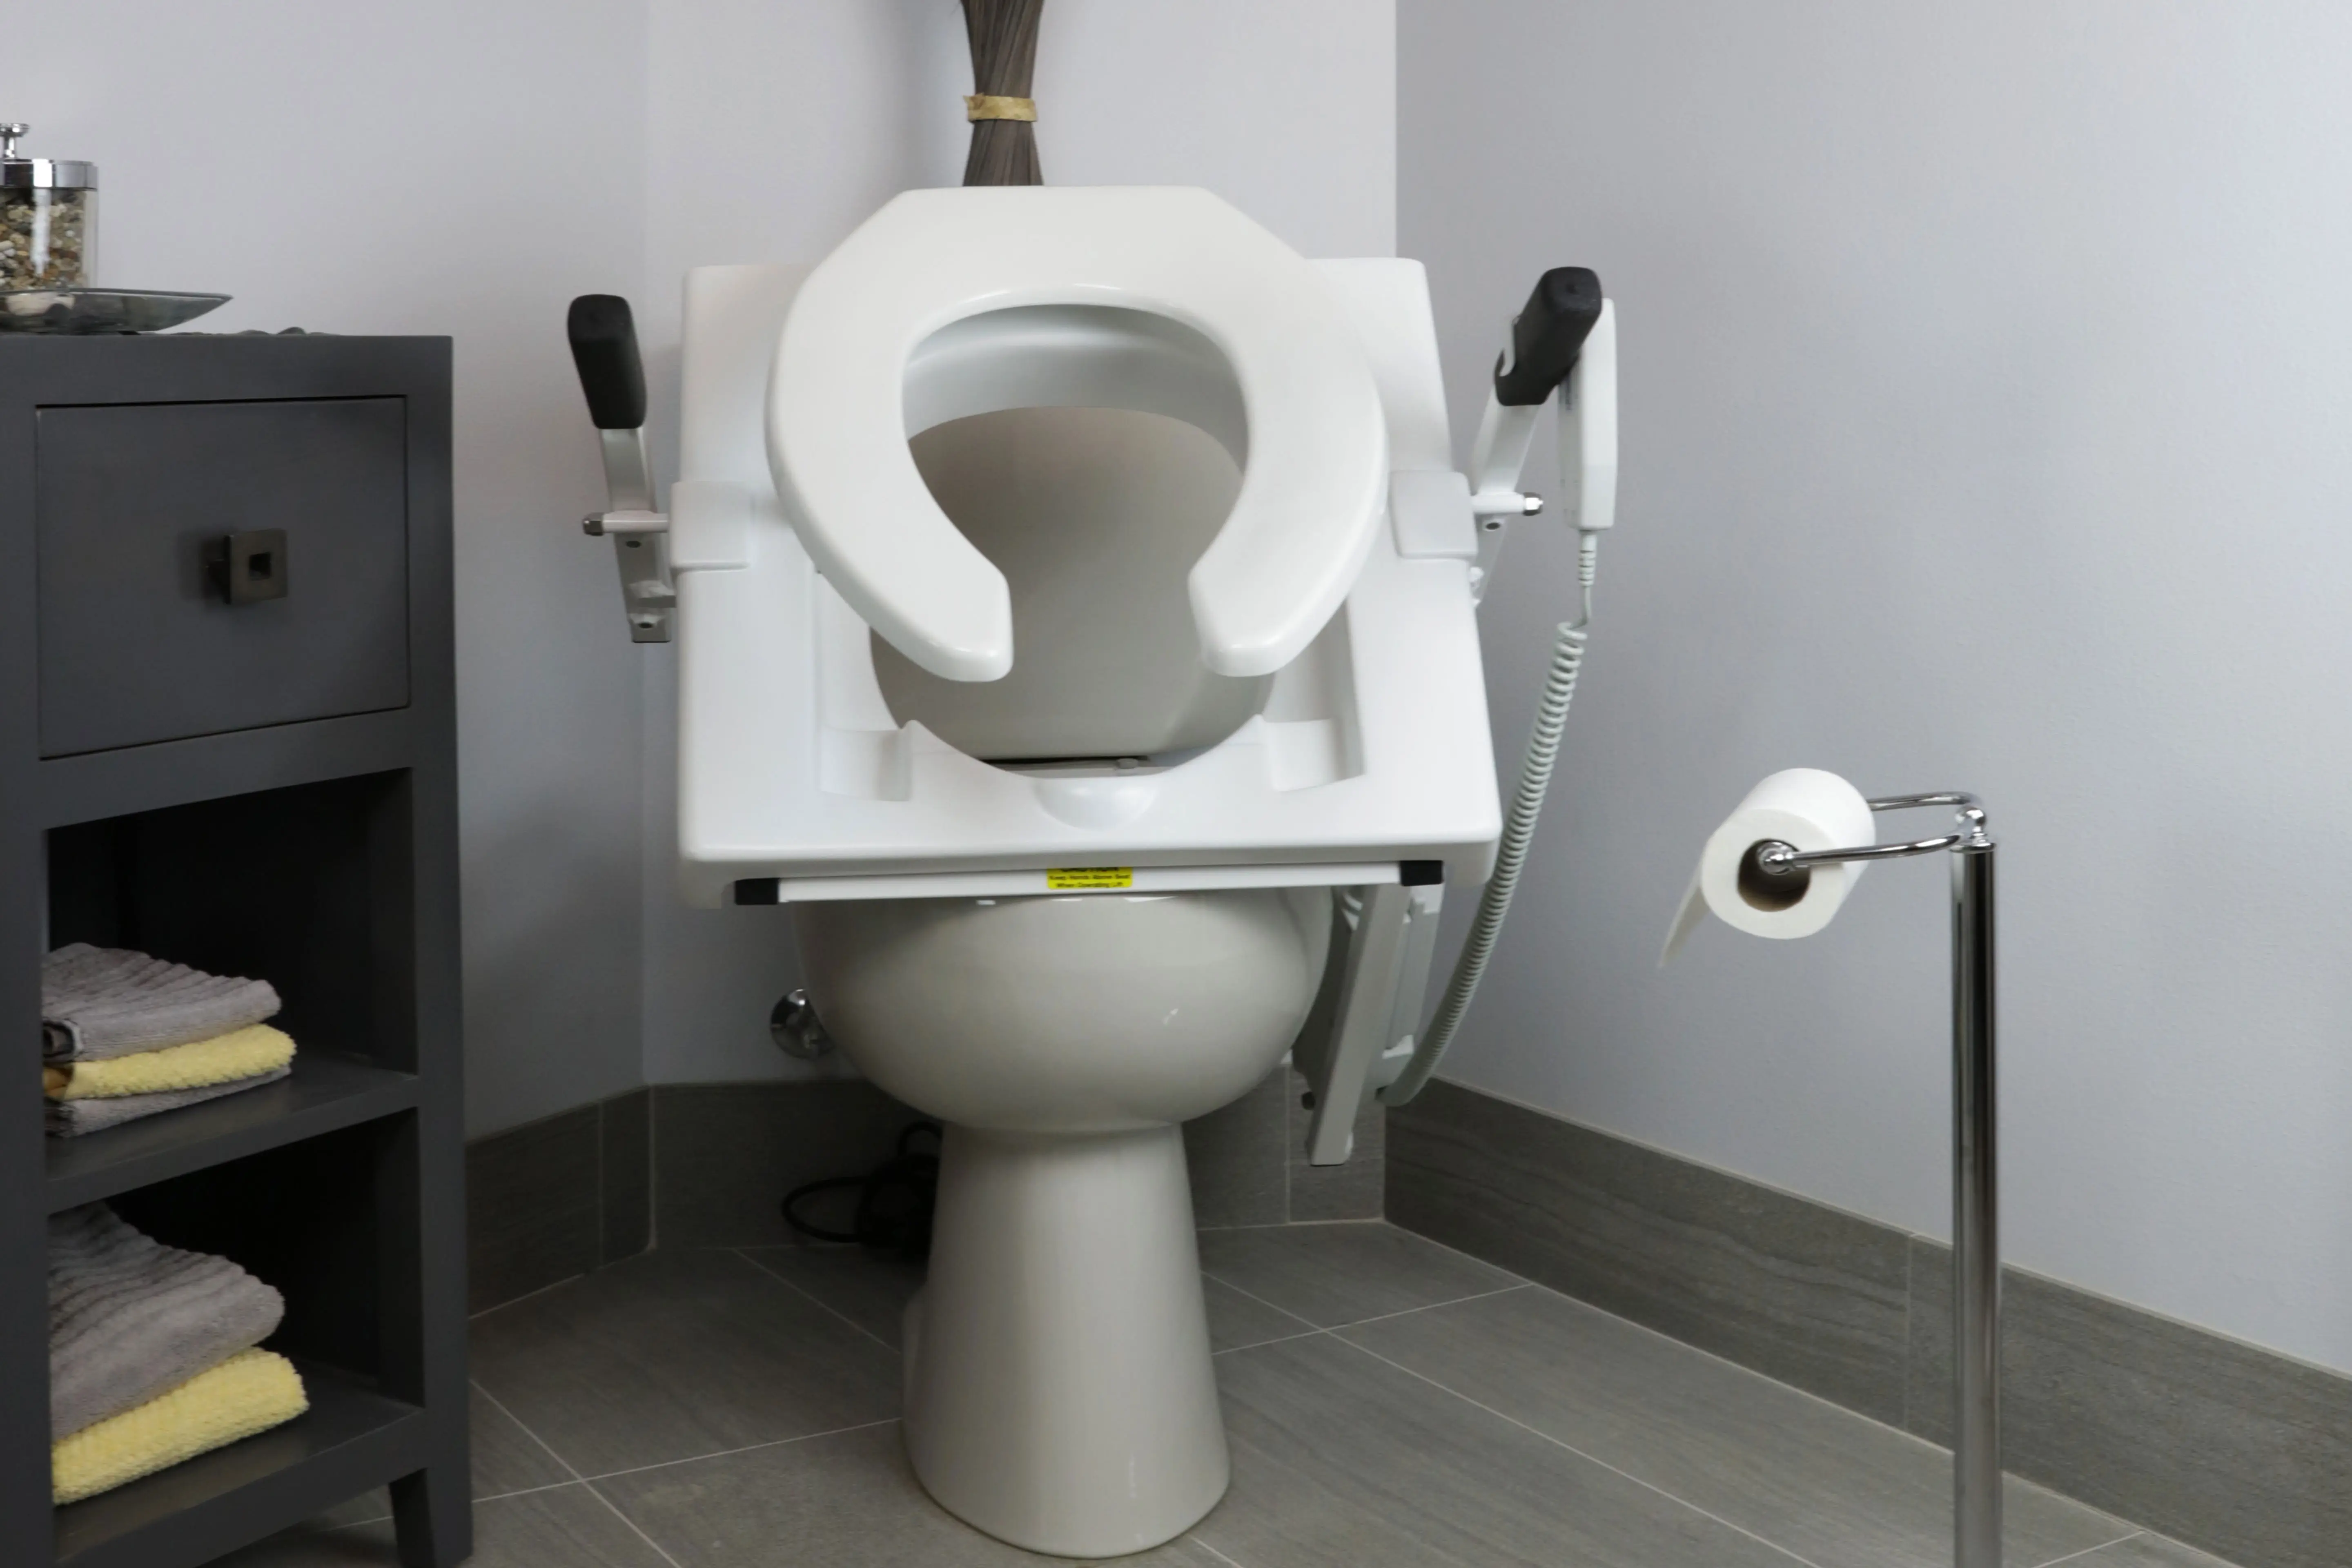 toilet seat riser for seniors